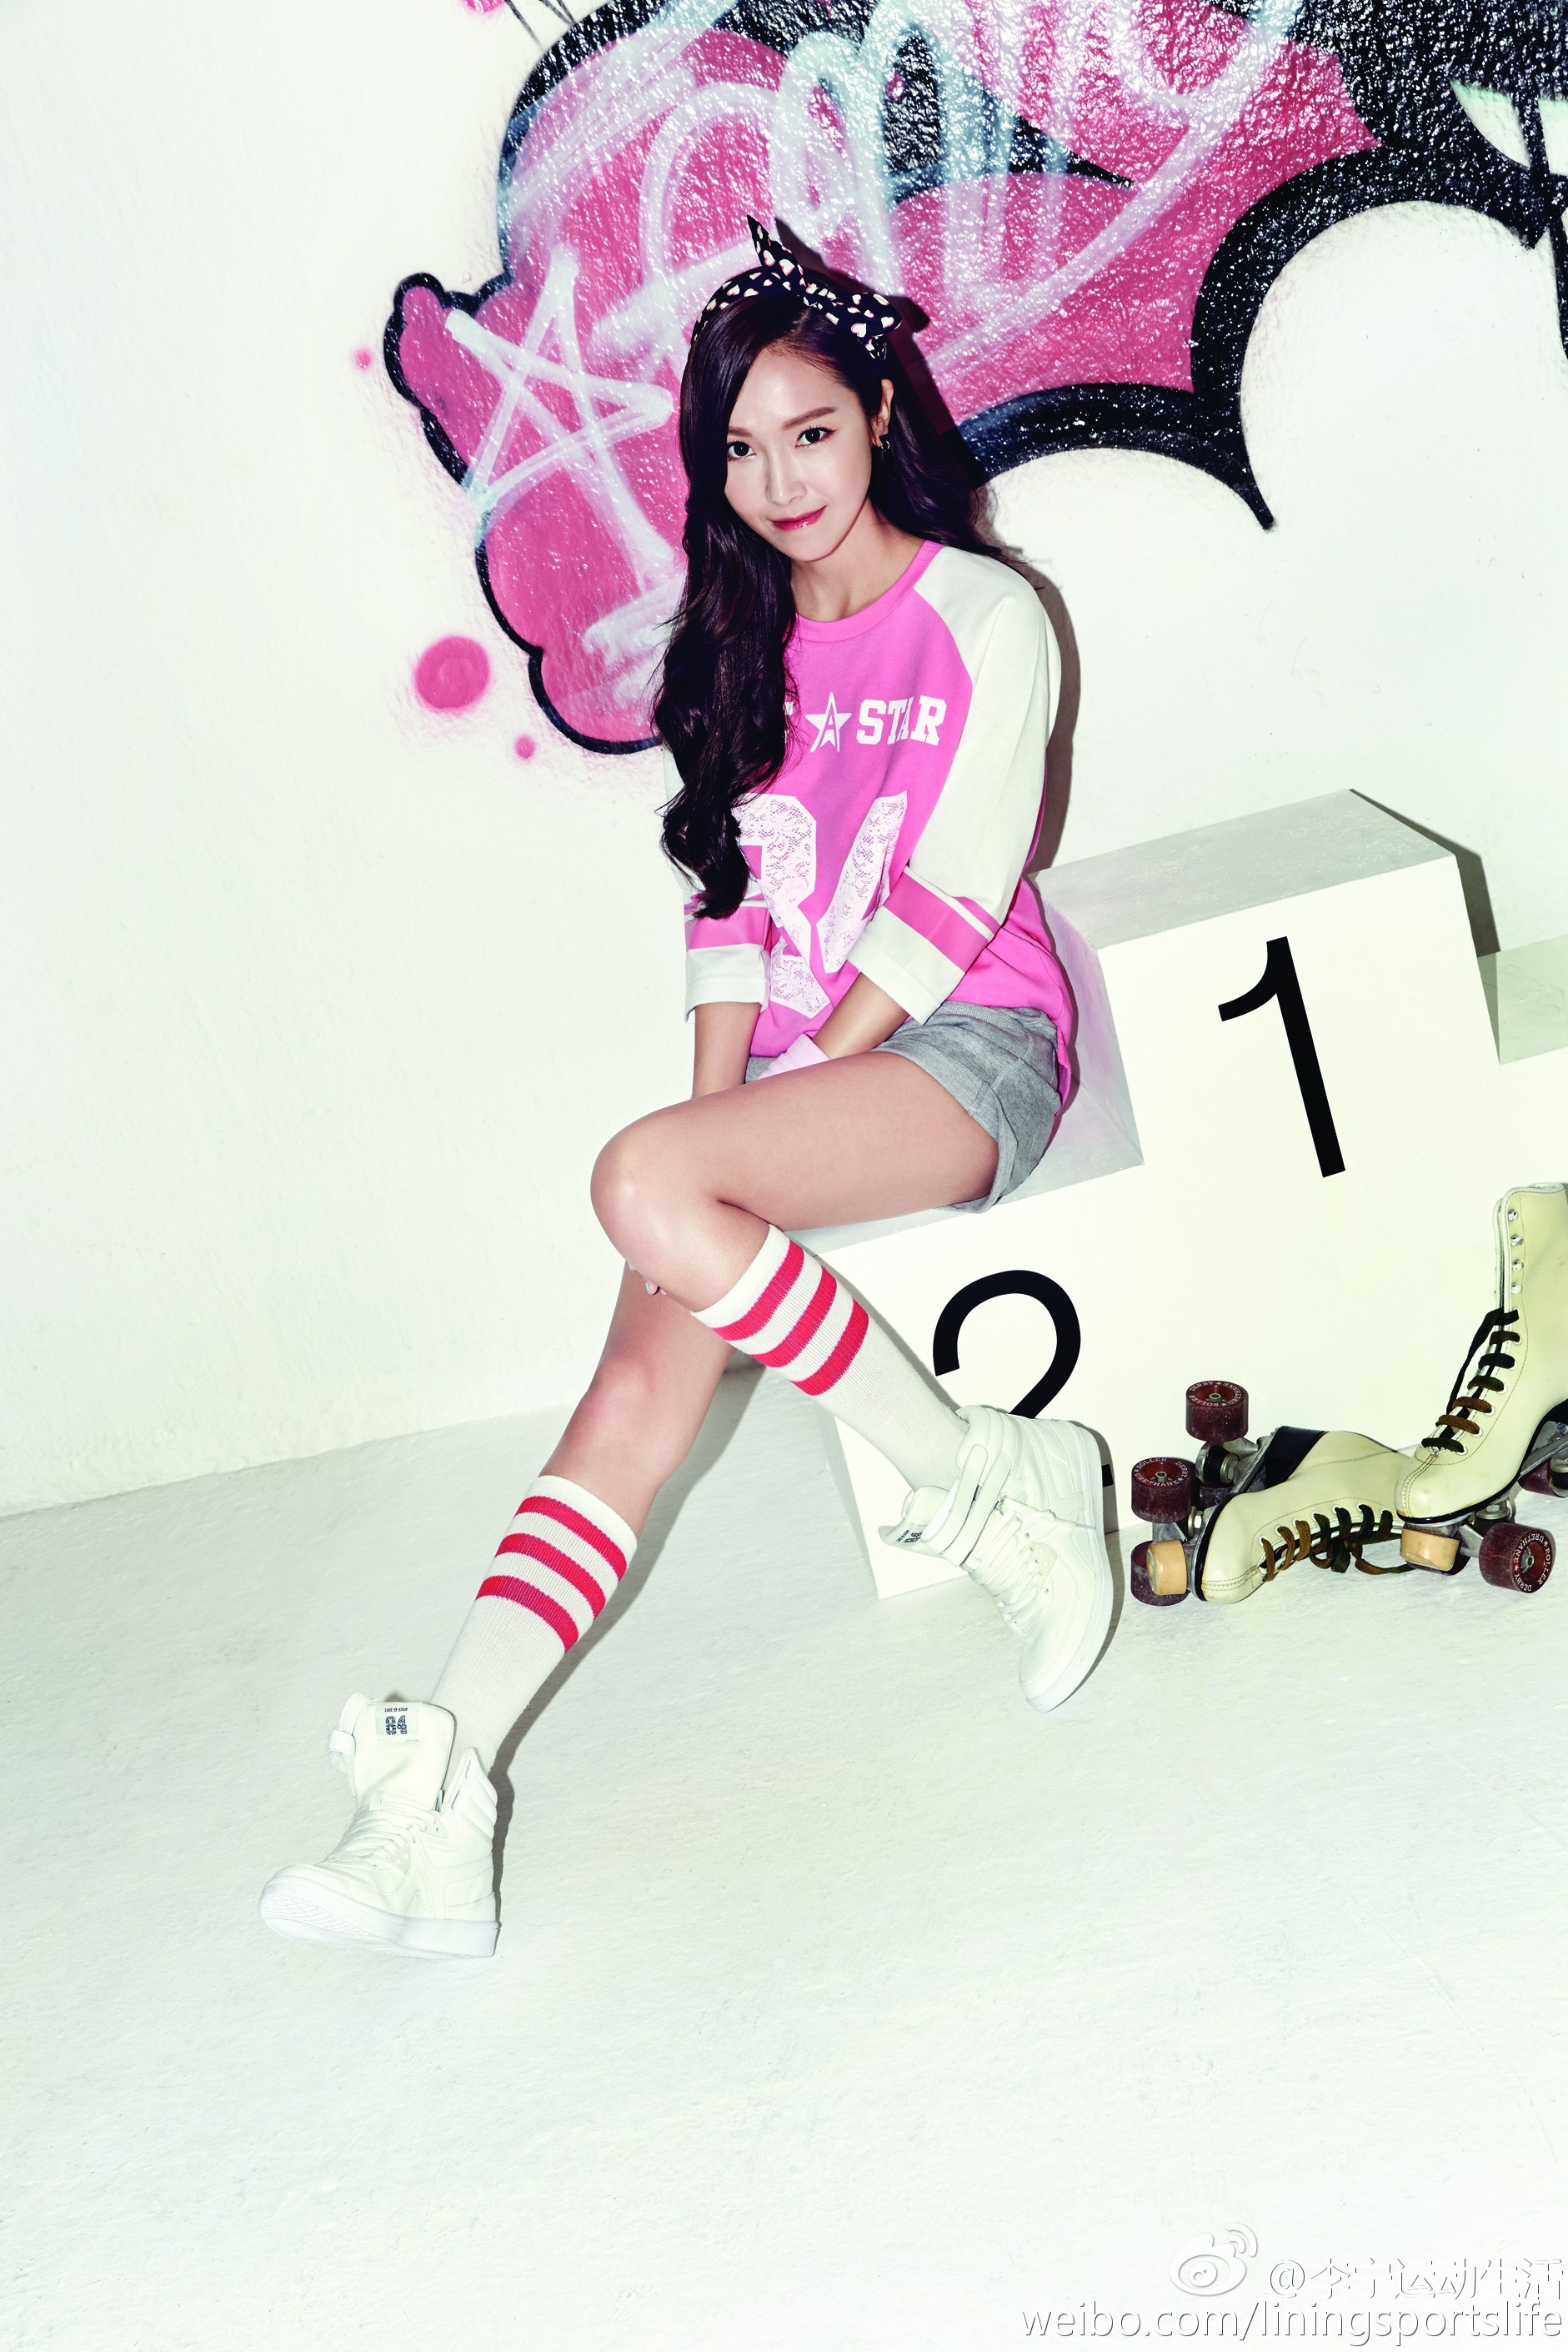 [OTHER][28-06-2014]Jessica trở thành người mẫu mới cho thương hiệu thời trang thể thao Li Ning - Page 3 005Bowe5jw1epw3ekeqk1j31g926dnlz